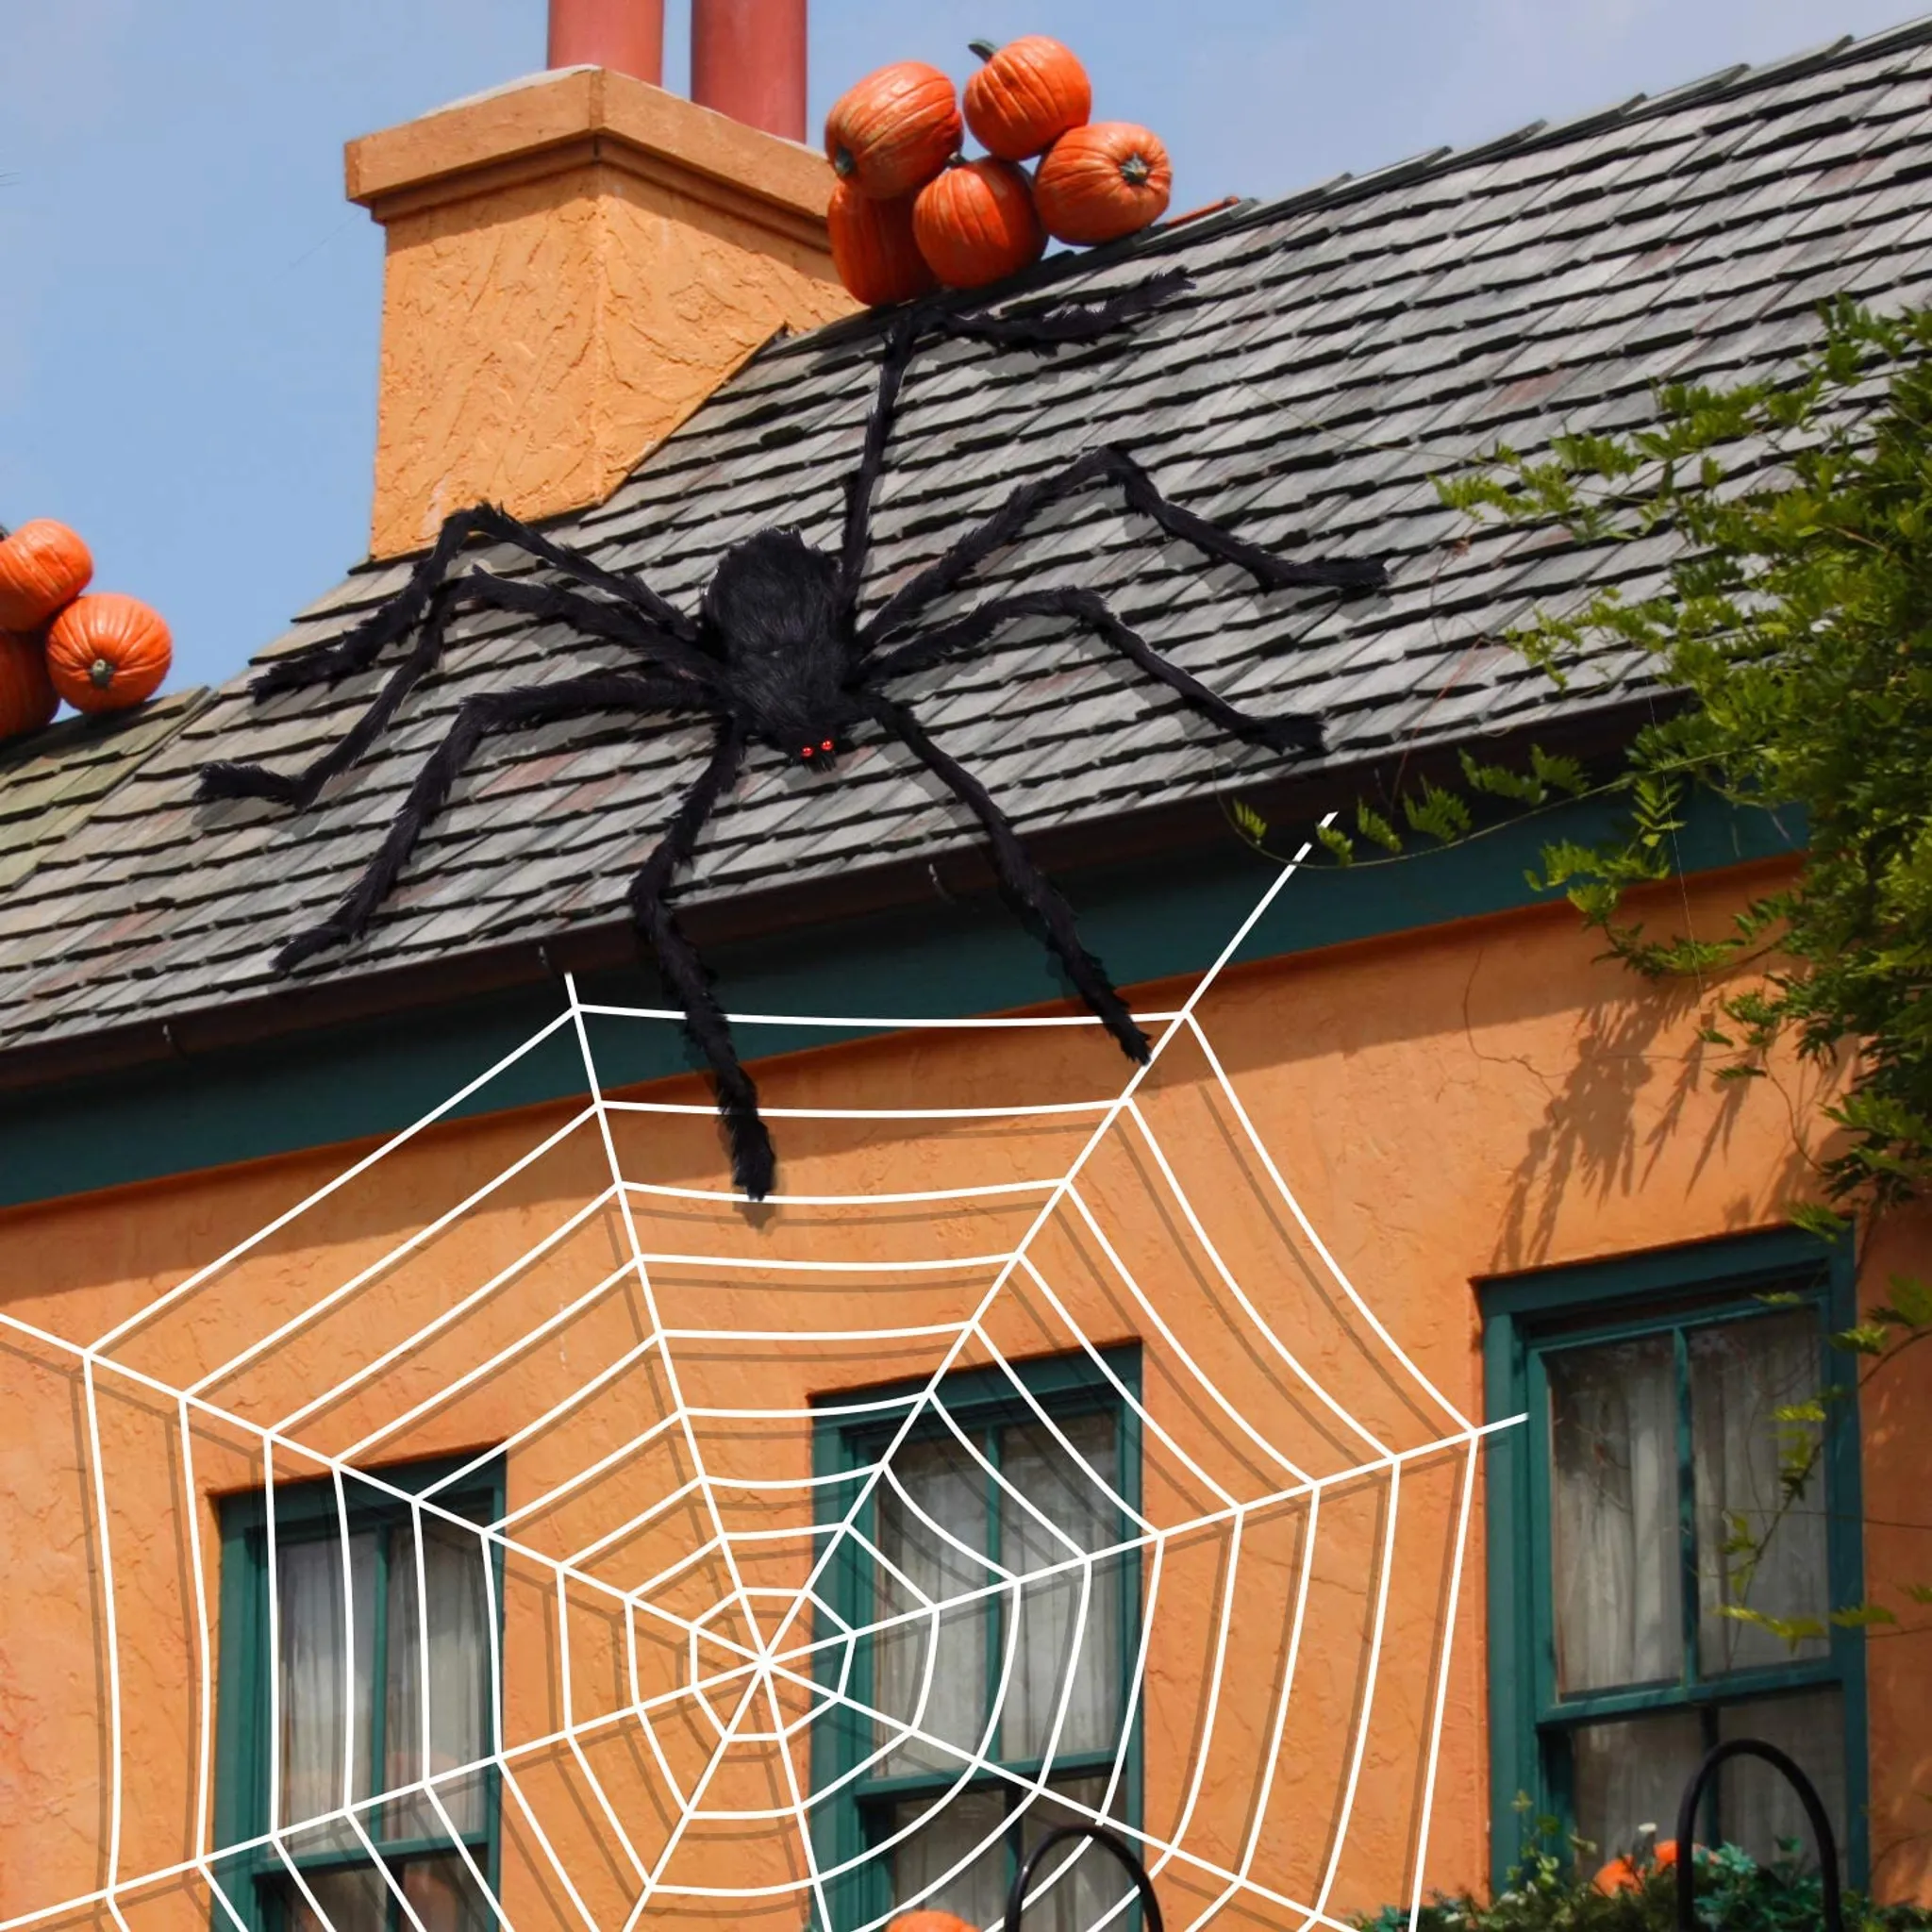 Riesiges Halloween Spinnennetz ca 3,58m Durchmesser für Horror Spinne 